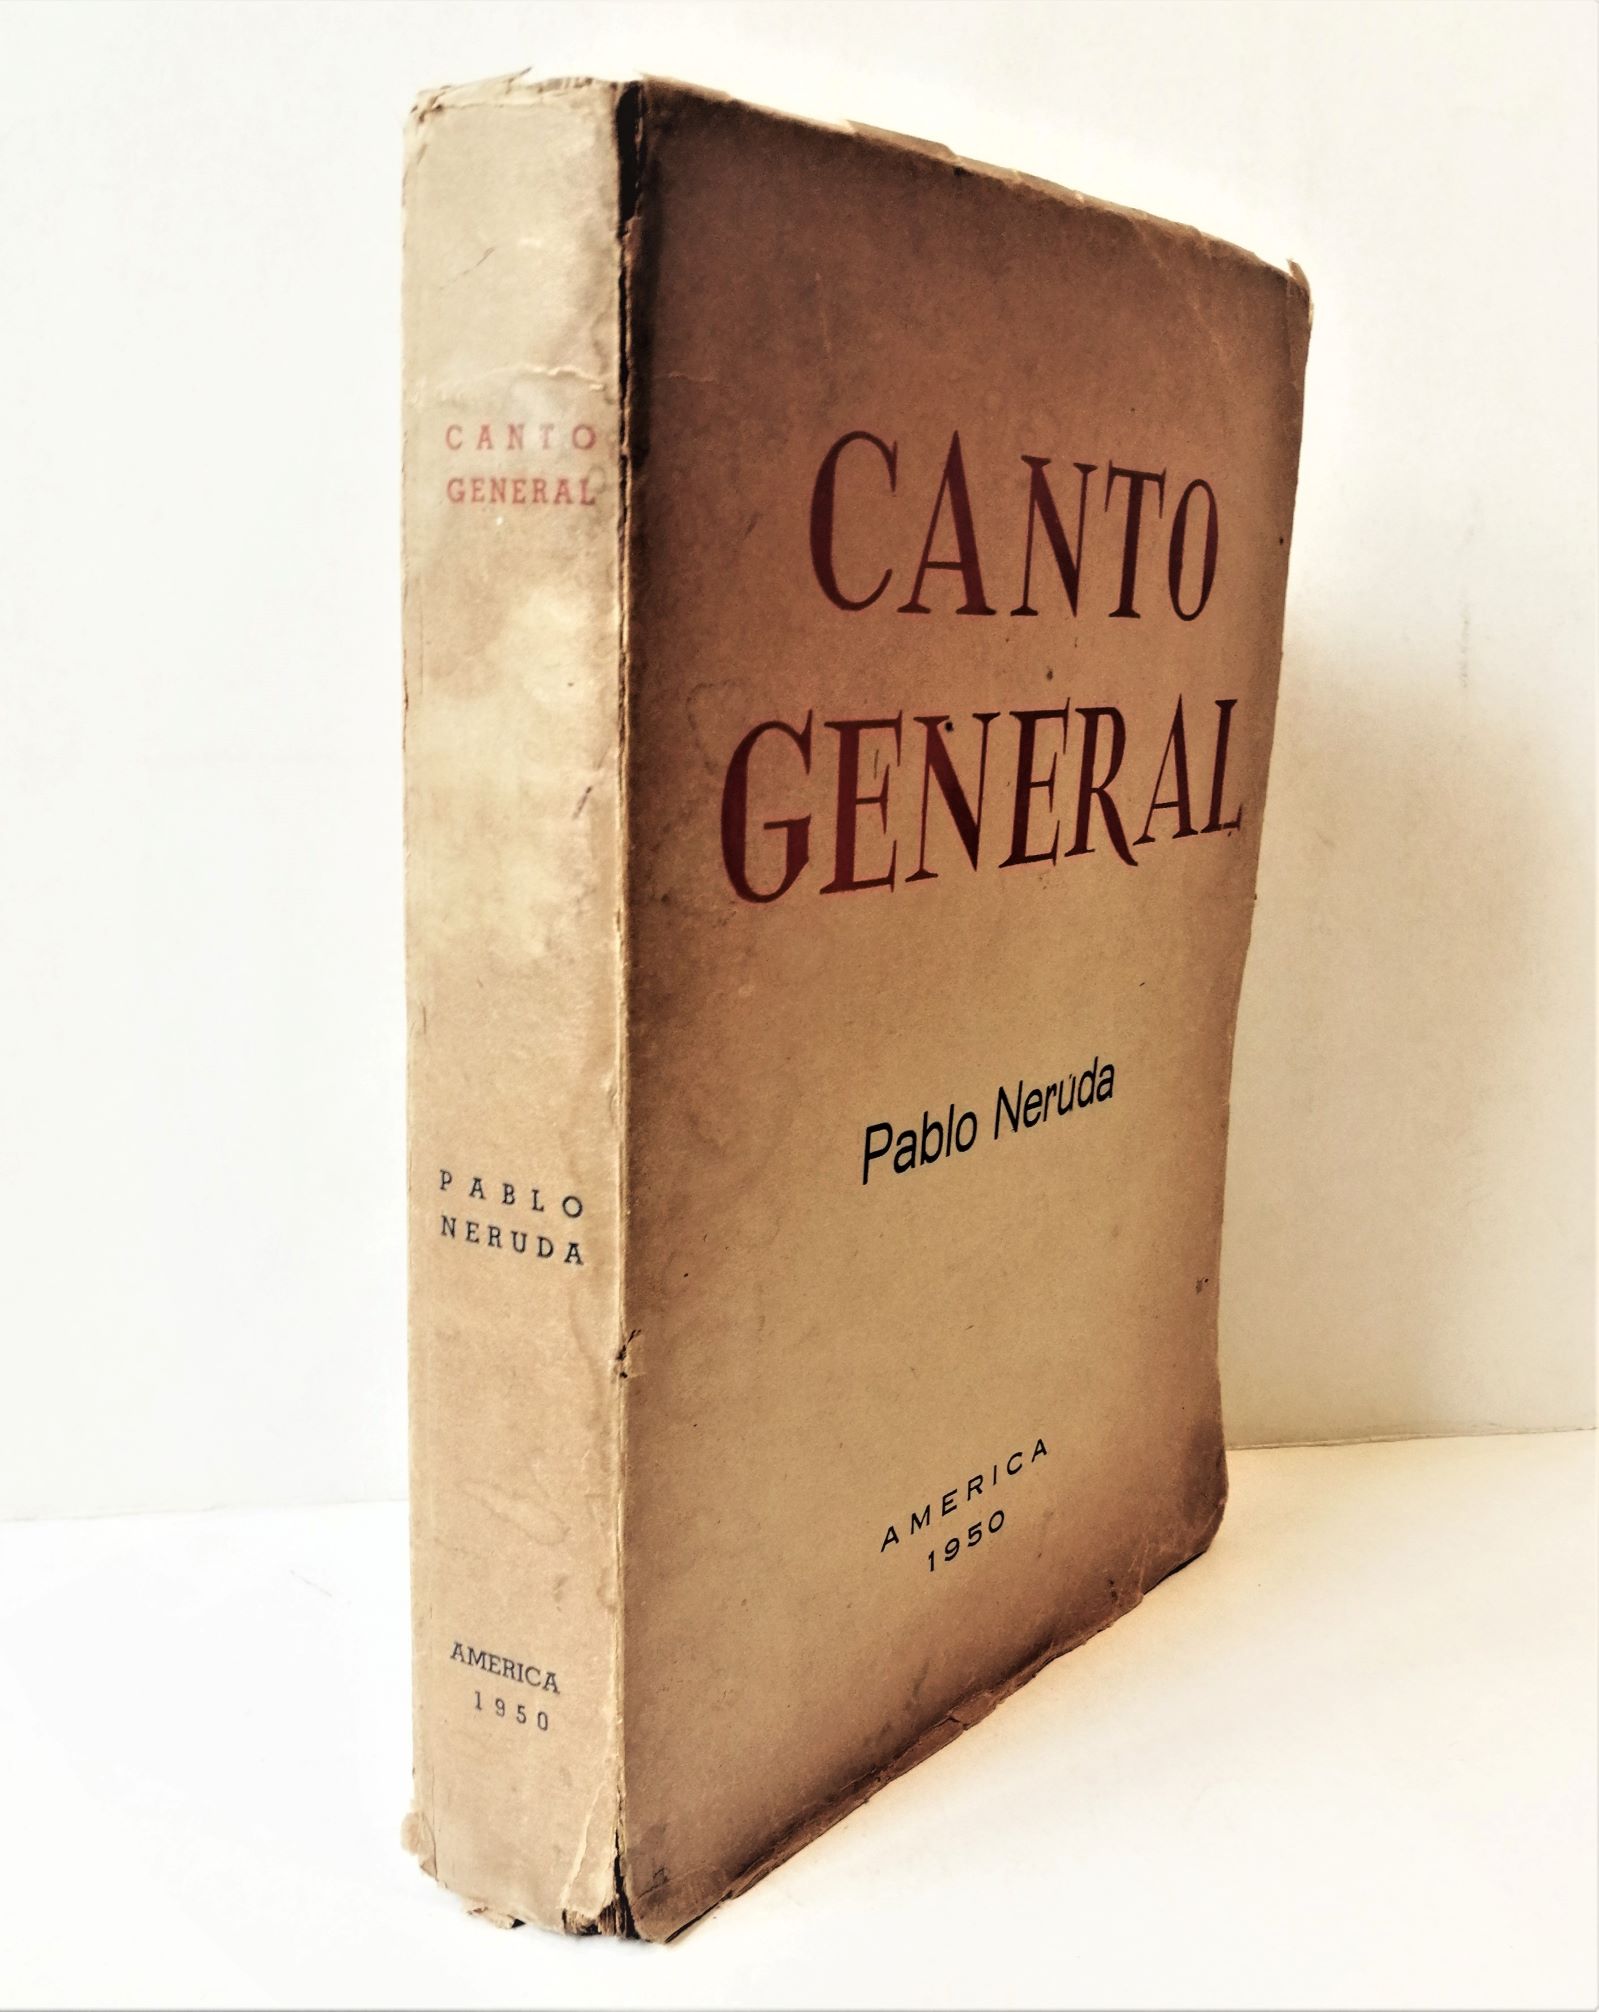 Pablo Neruda - Canto General (Edición clandestina)